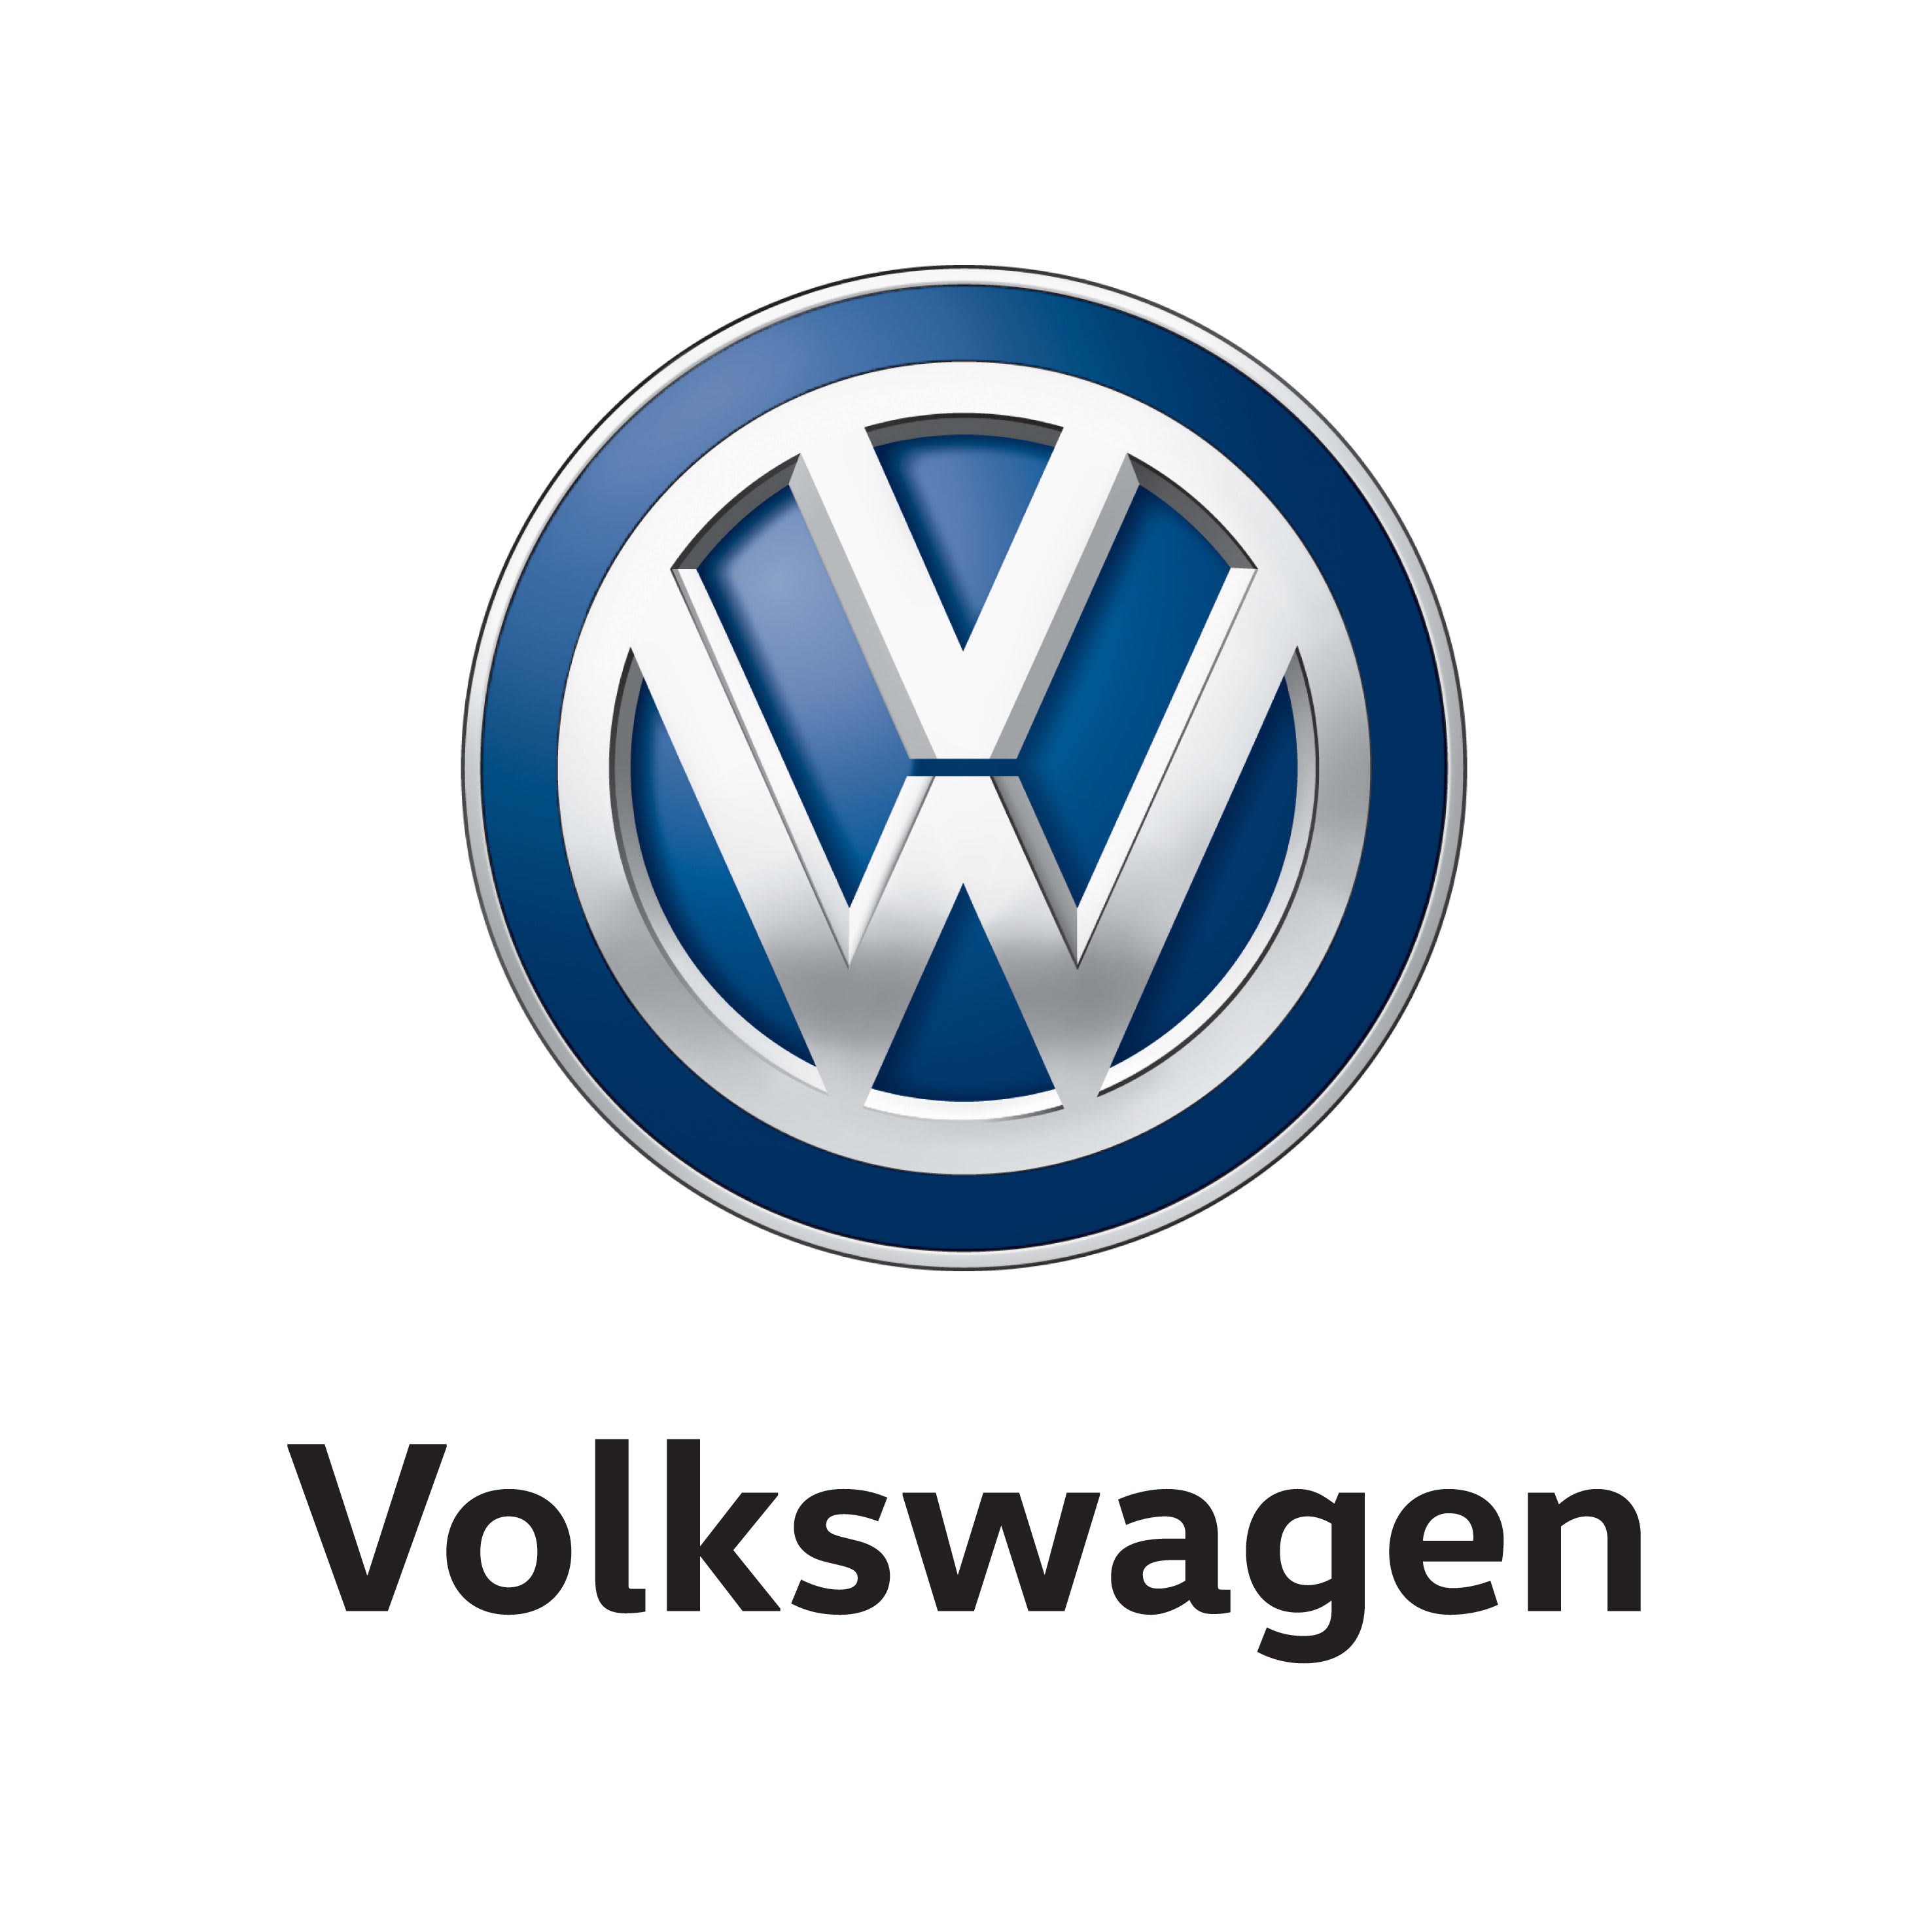 Somos Volkswagen Leasing